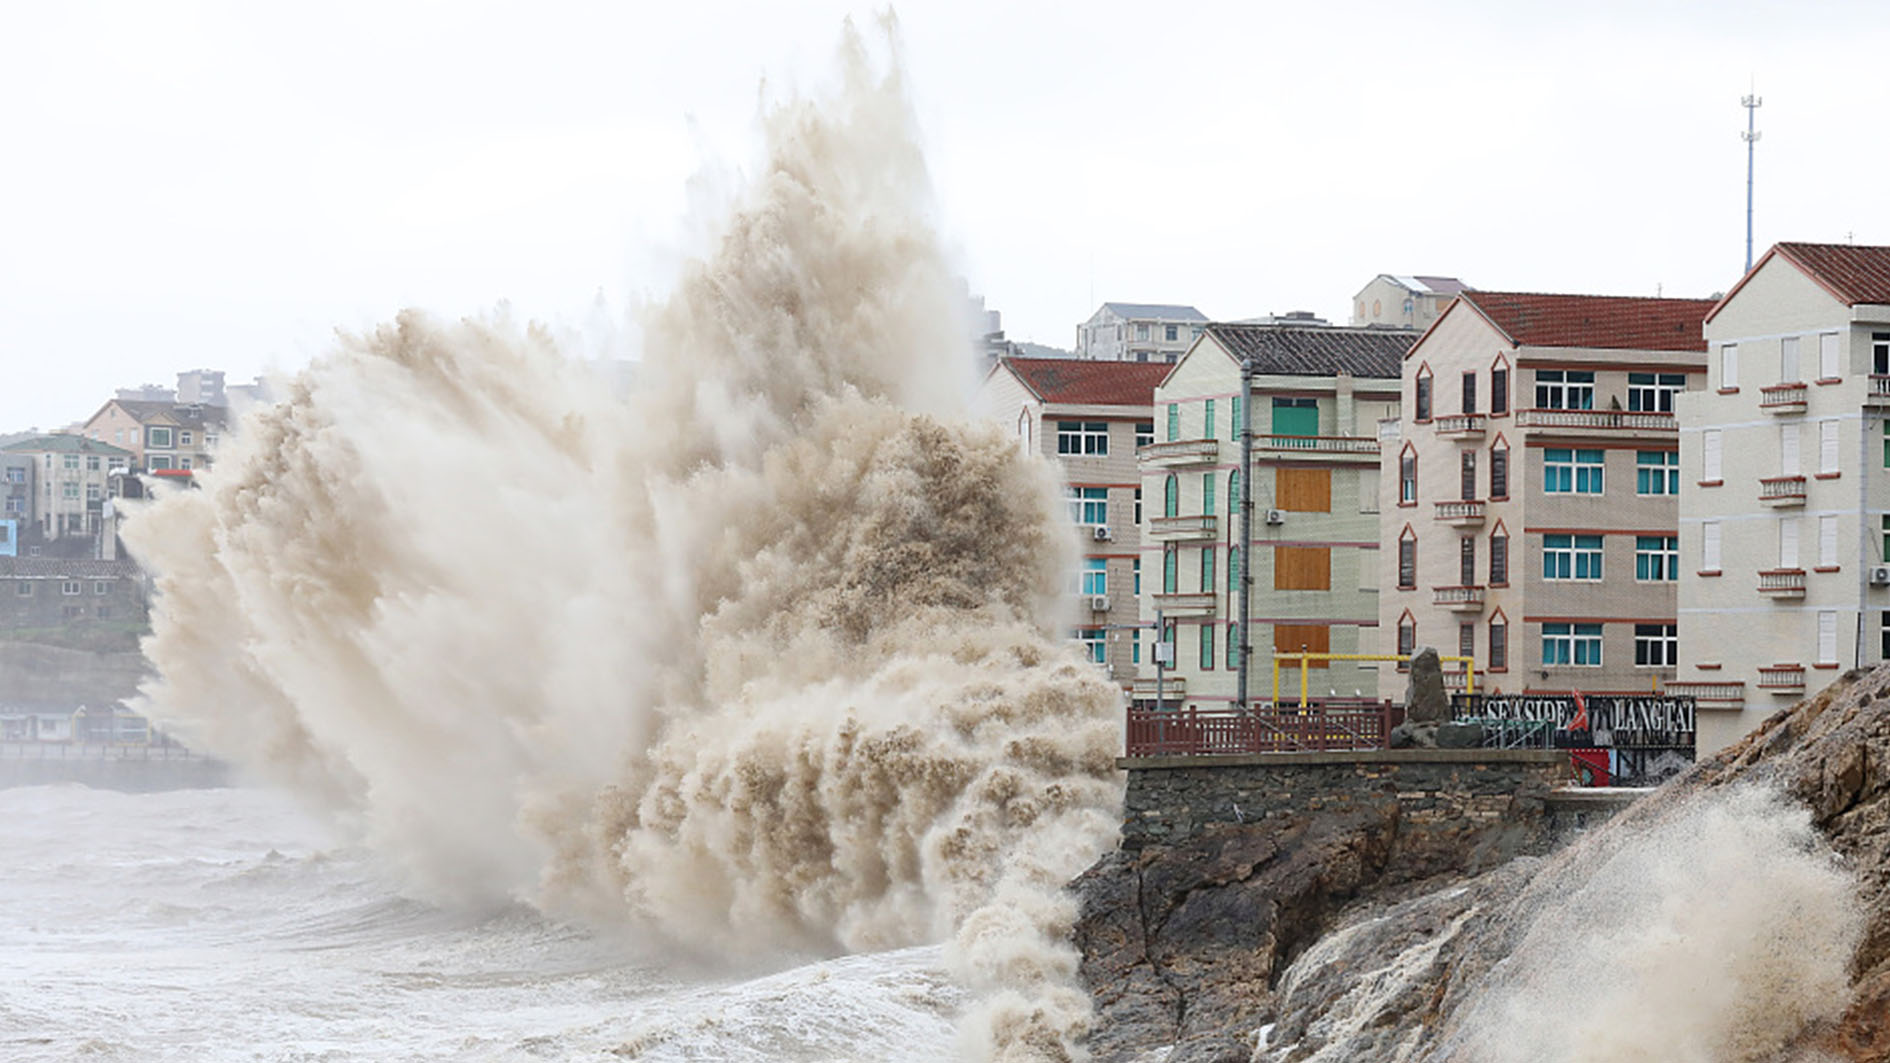 Bão Khanun gây sóng lớn ở các khu vực ven biển phía đông tỉnh Chiết Giang, Trung Quốc, khiến người dân phải thực hiện các biện pháp phòng chống thiên tai sớm. Ảnh: CGTN